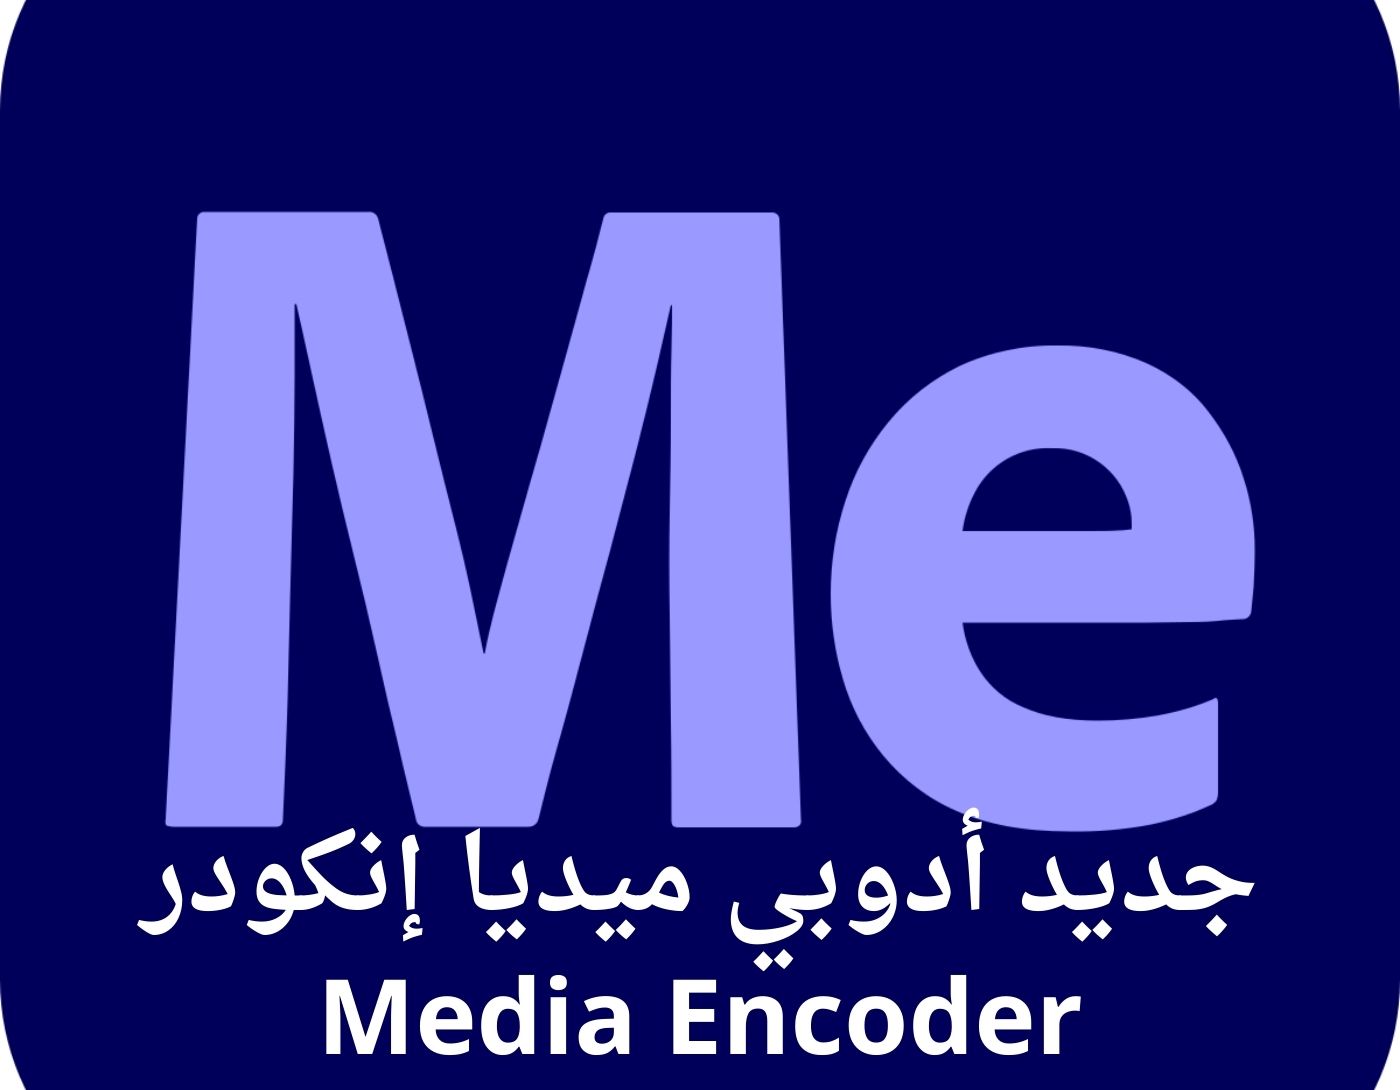 صورة واجهة برنامج Media Encoder